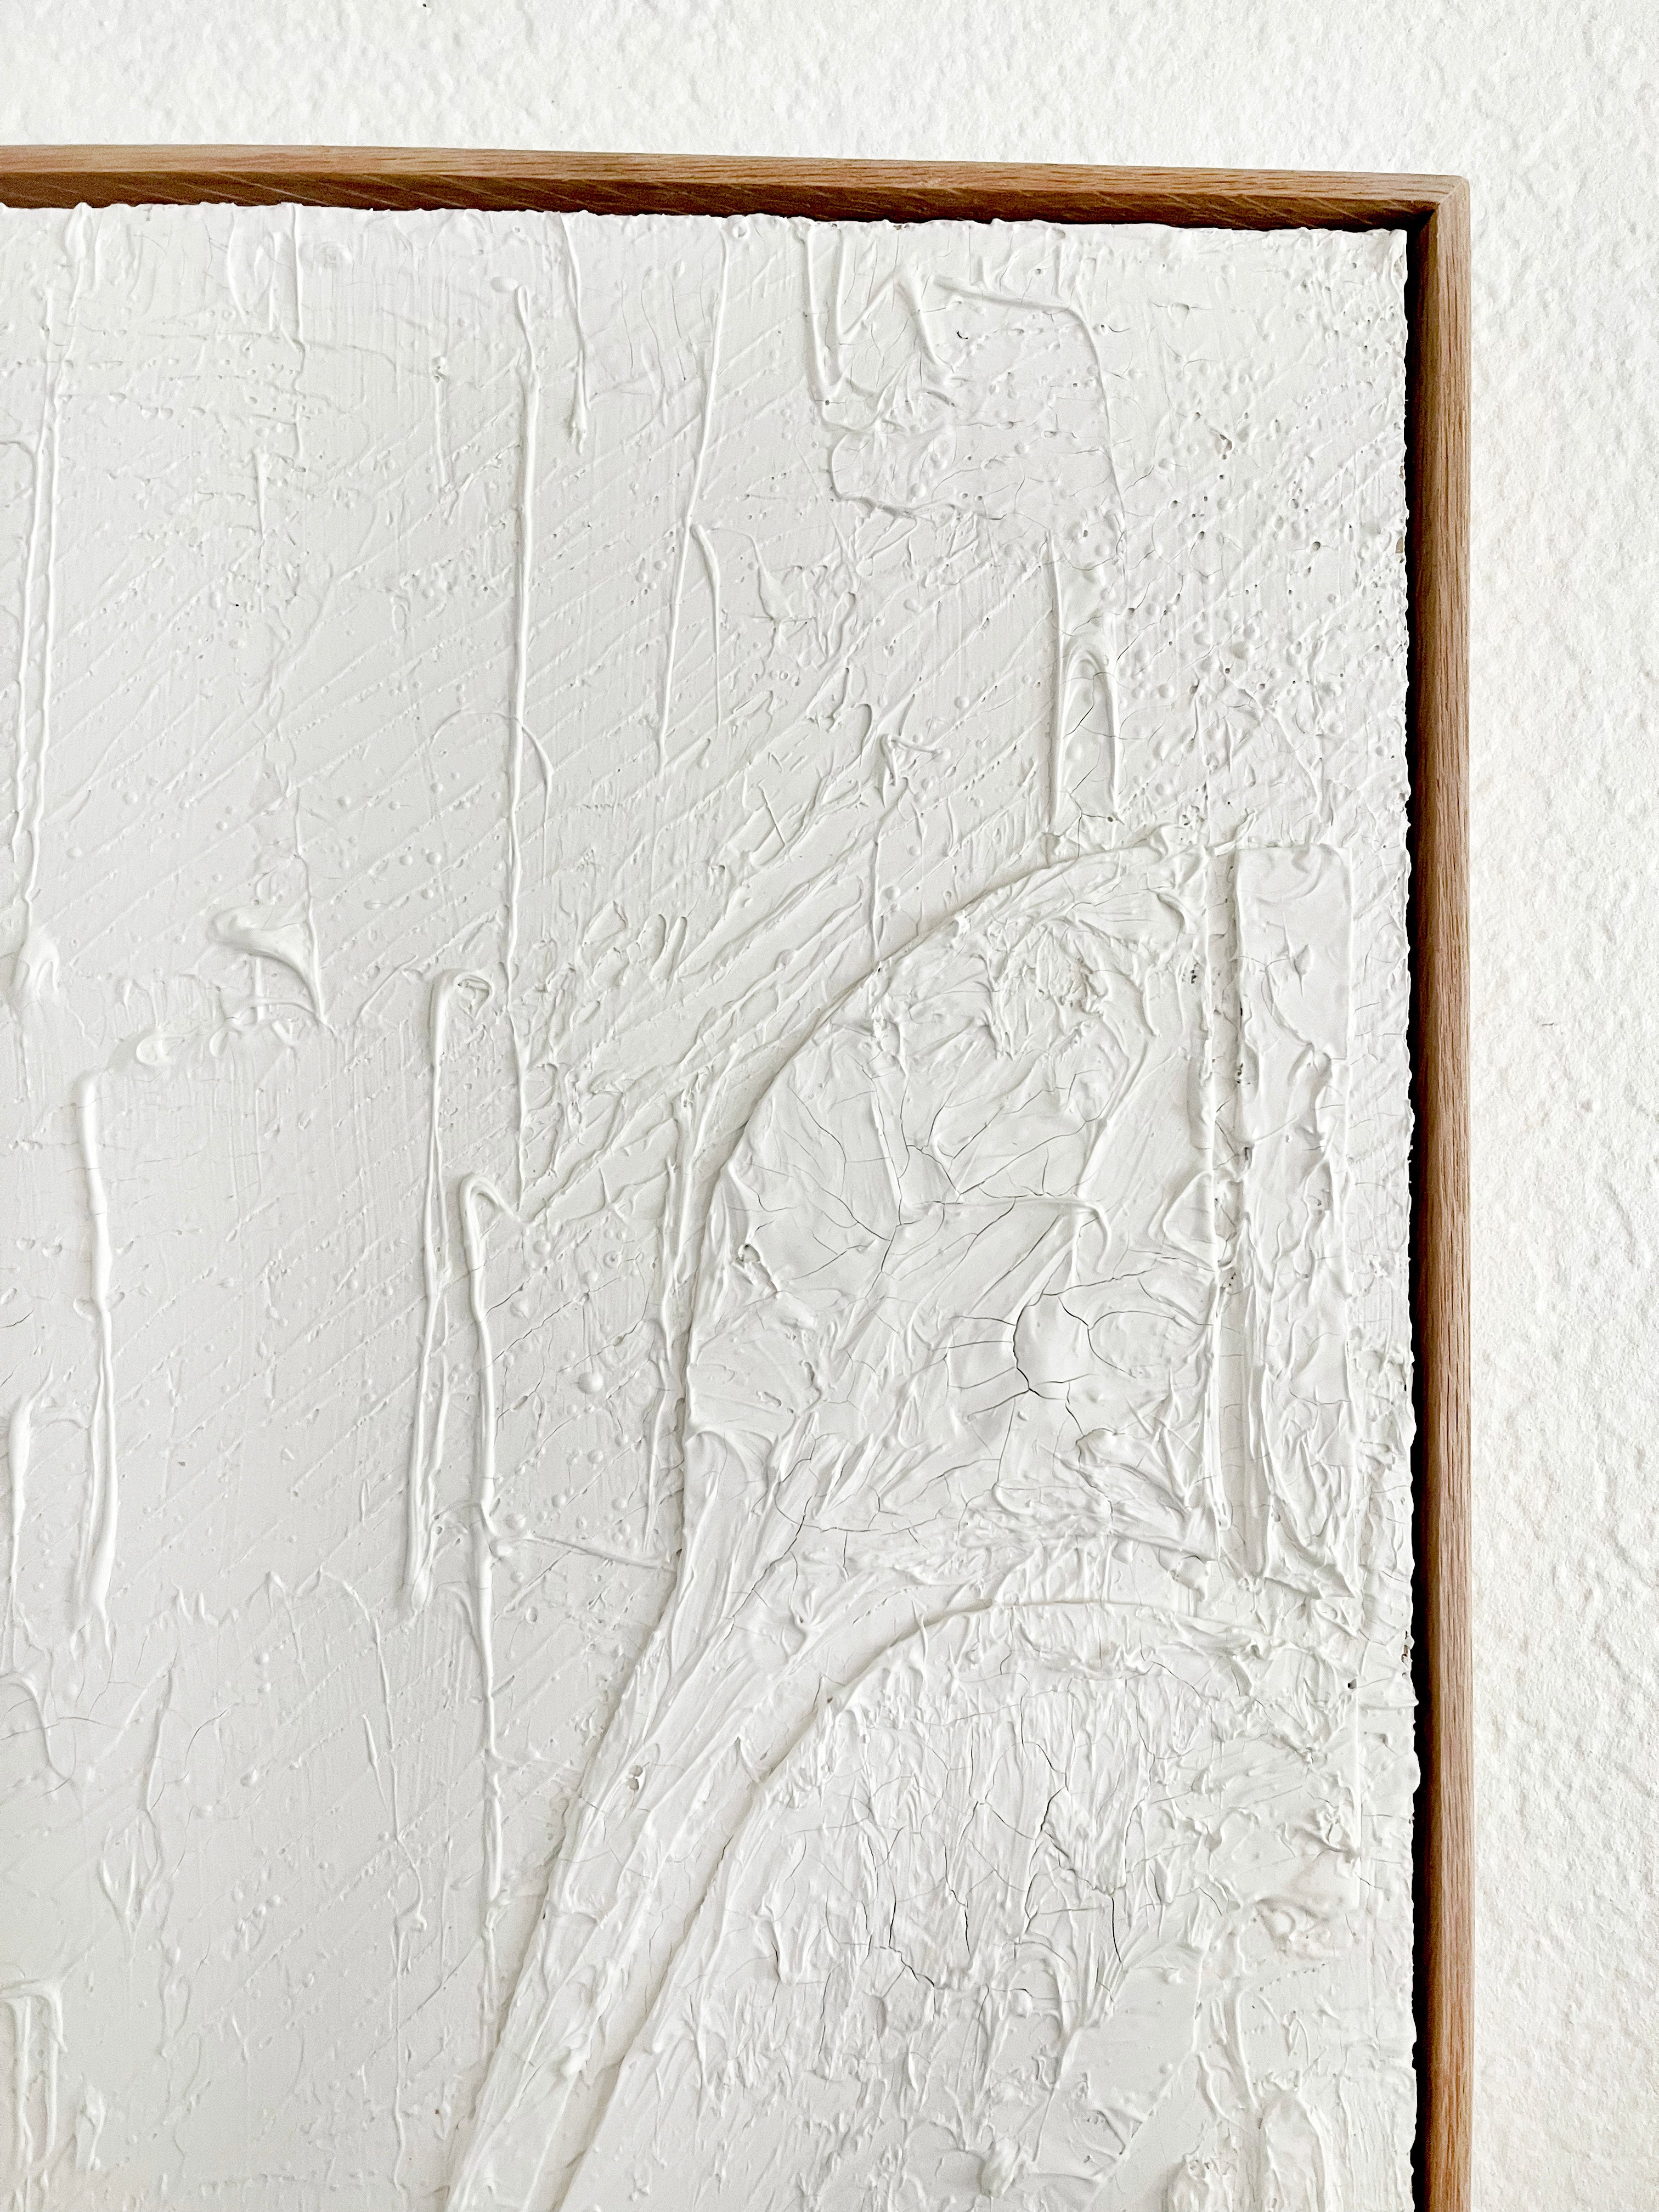 Star Wars Darth Vader White Plaster Wall Art -Framed in White Oak Wood